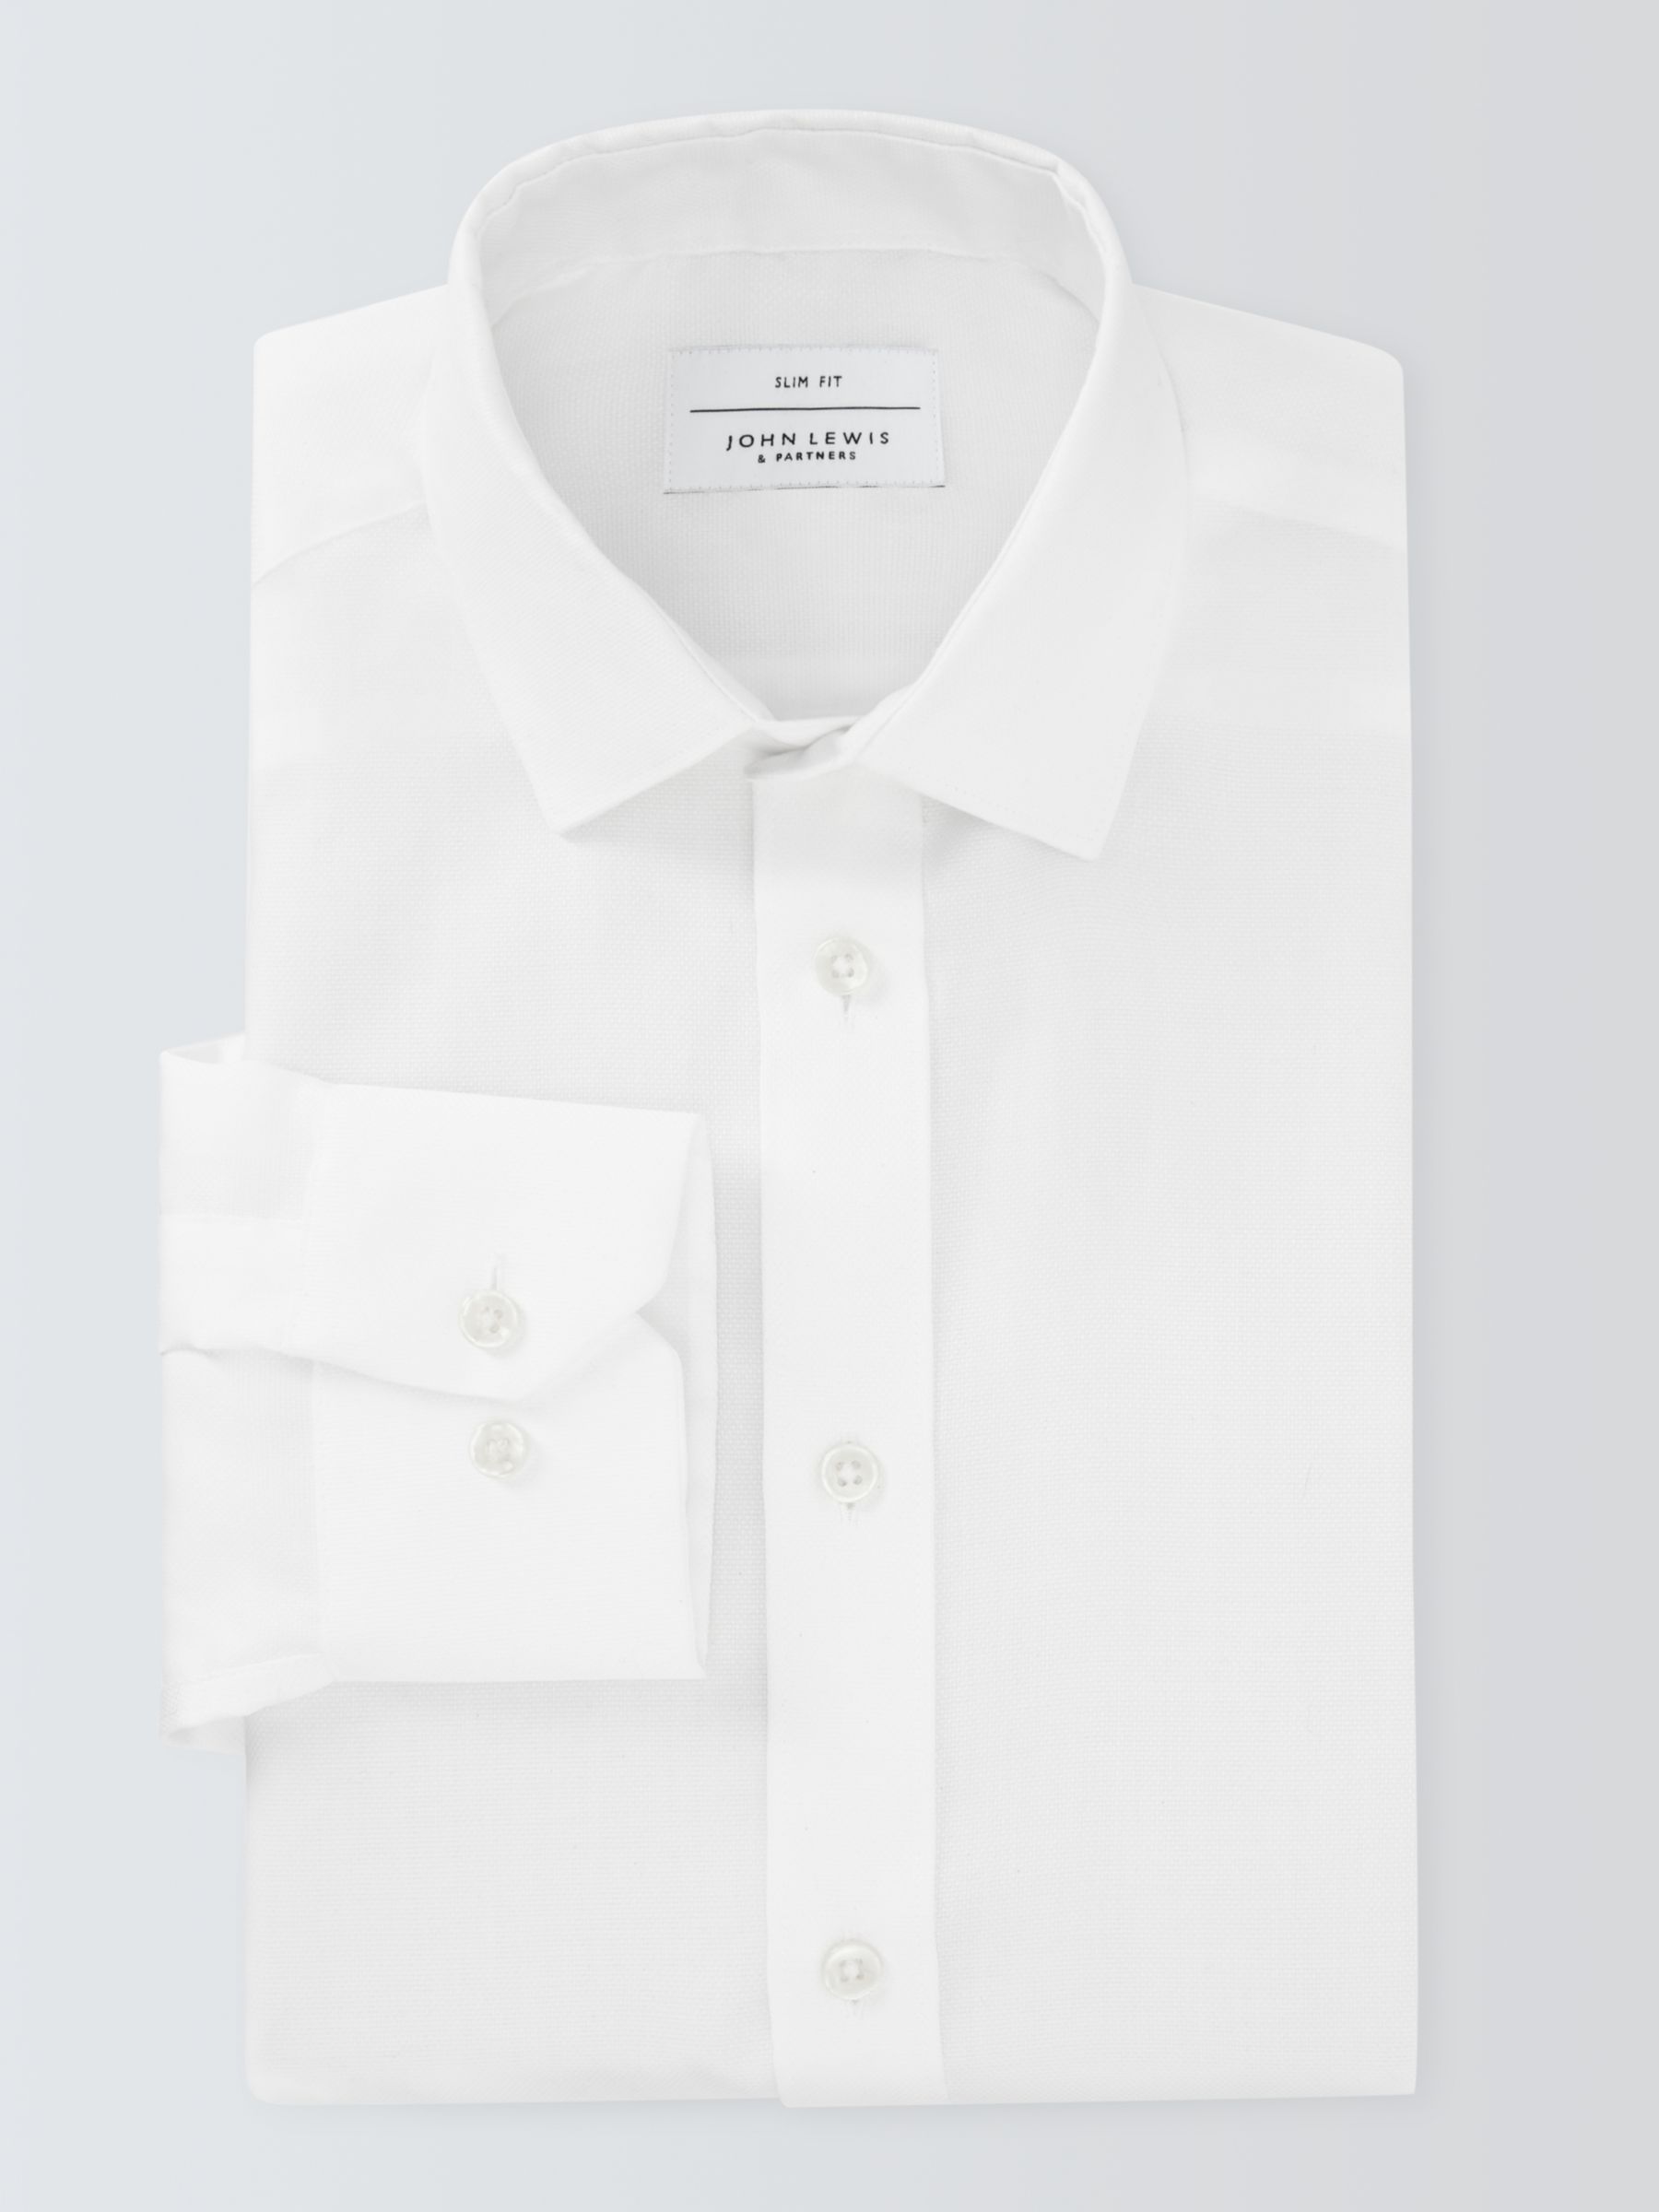 John Lewis Non Iron Dobby Slim Fit Shirt, White, 17.5R